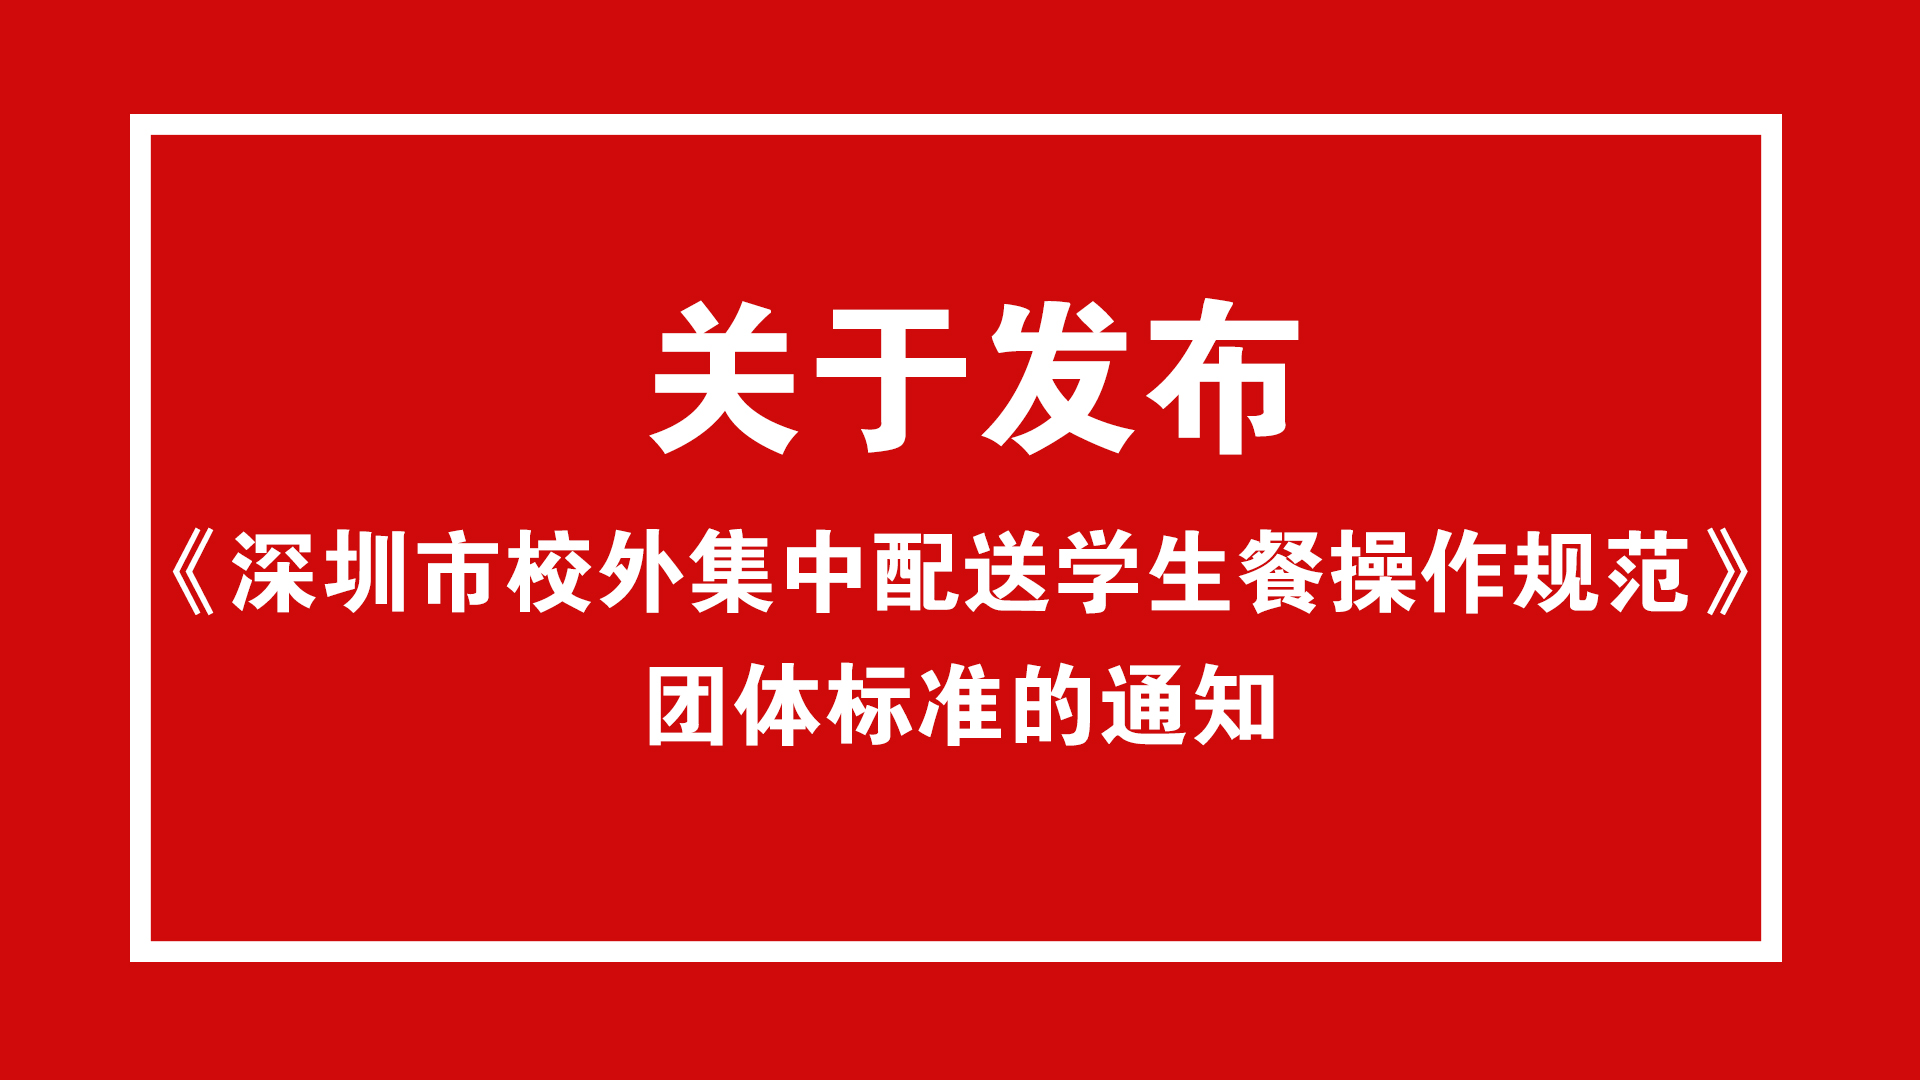 关于发布《深圳市校外集中配送学生餐操作规范》团体标准的通知